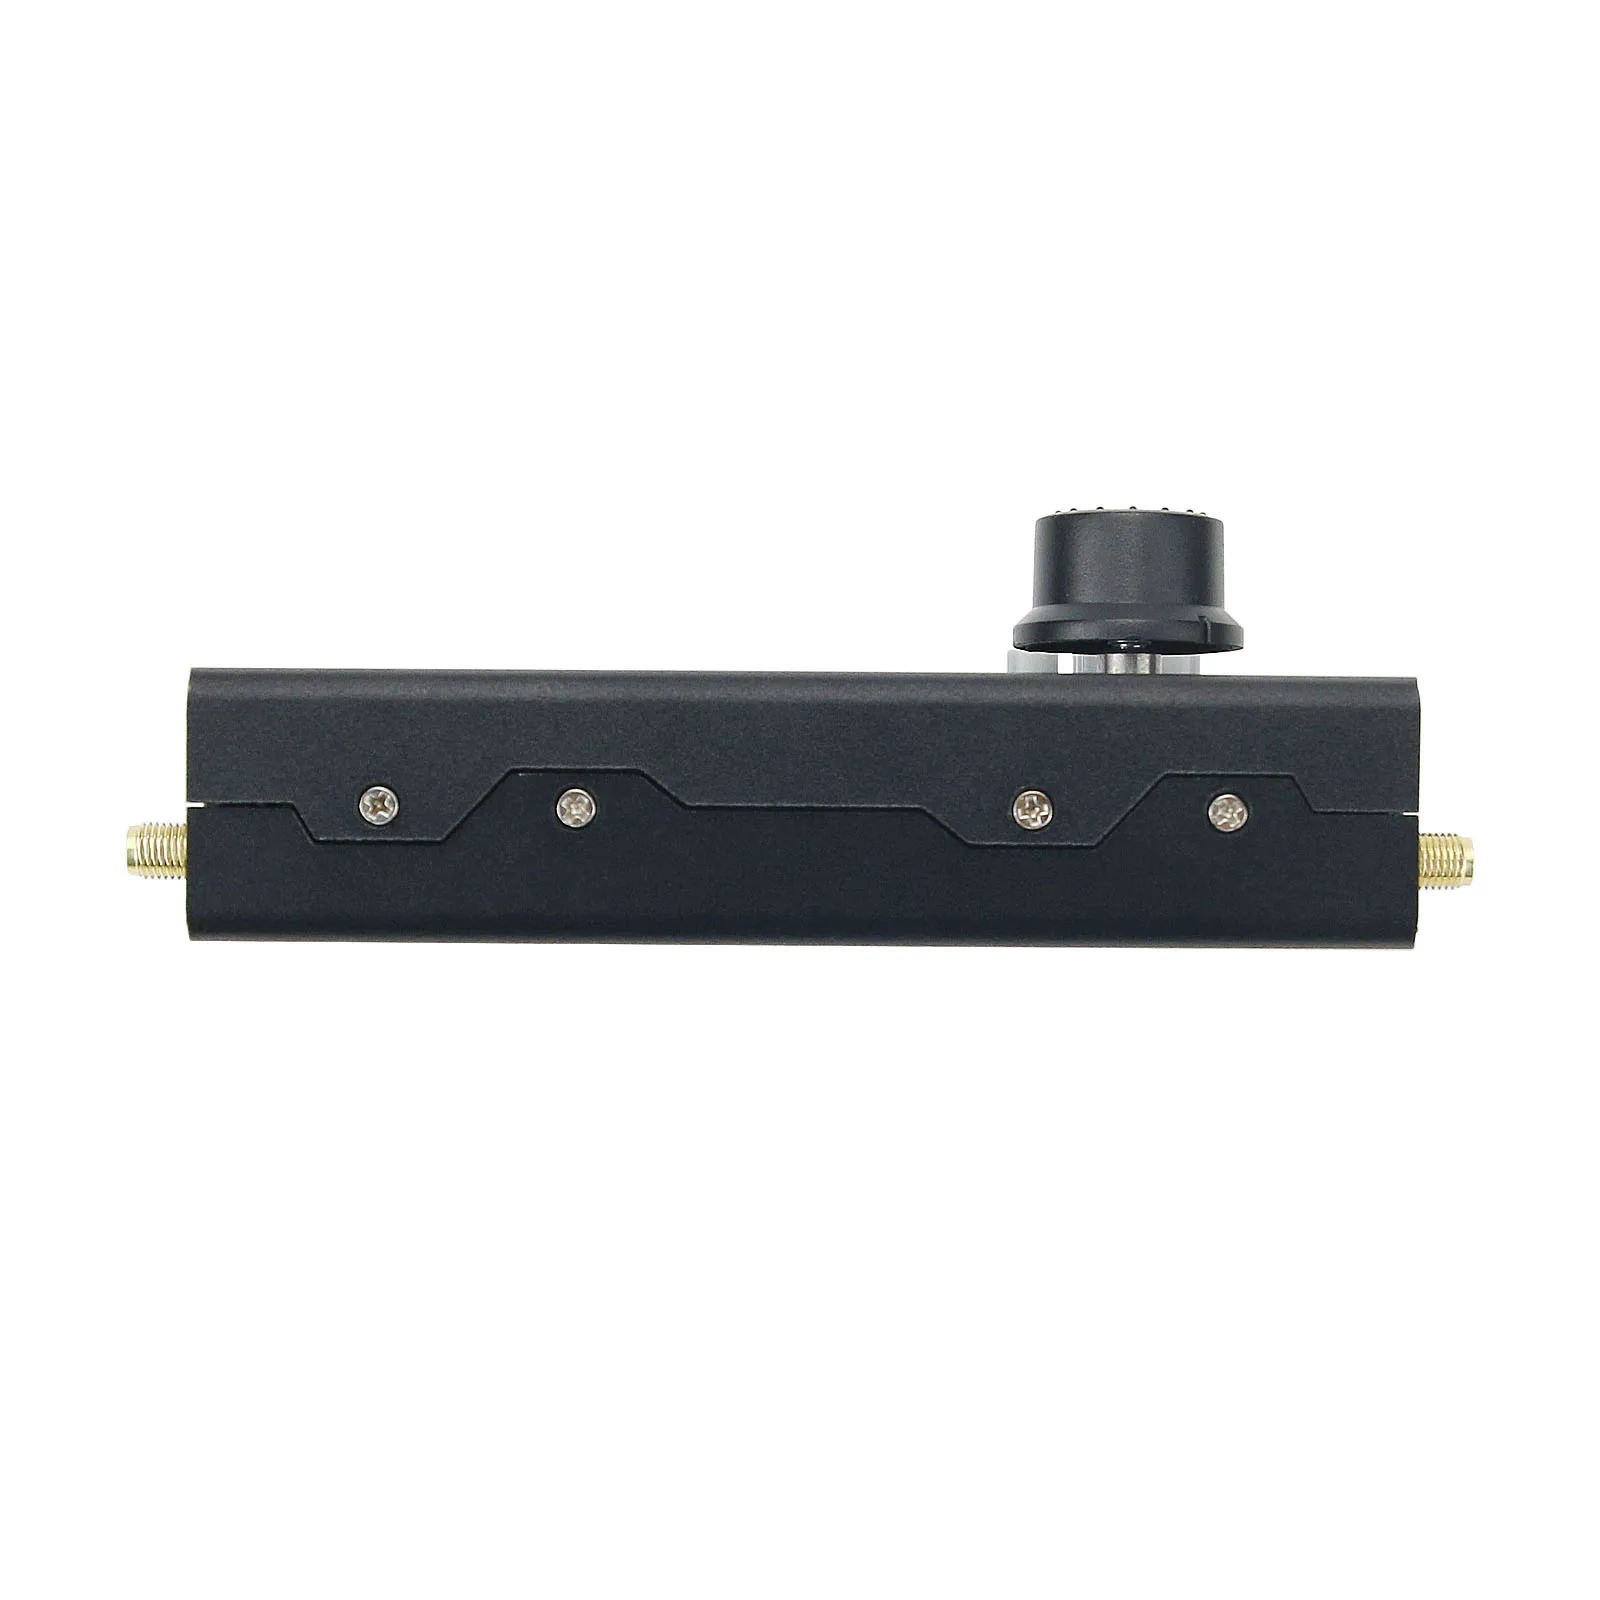 HackRF One R9 V2.0.0 + Portapack H2 + Telescopic Antenna + Data Cable SDR 1MHz-6GHz SDR Kit Black